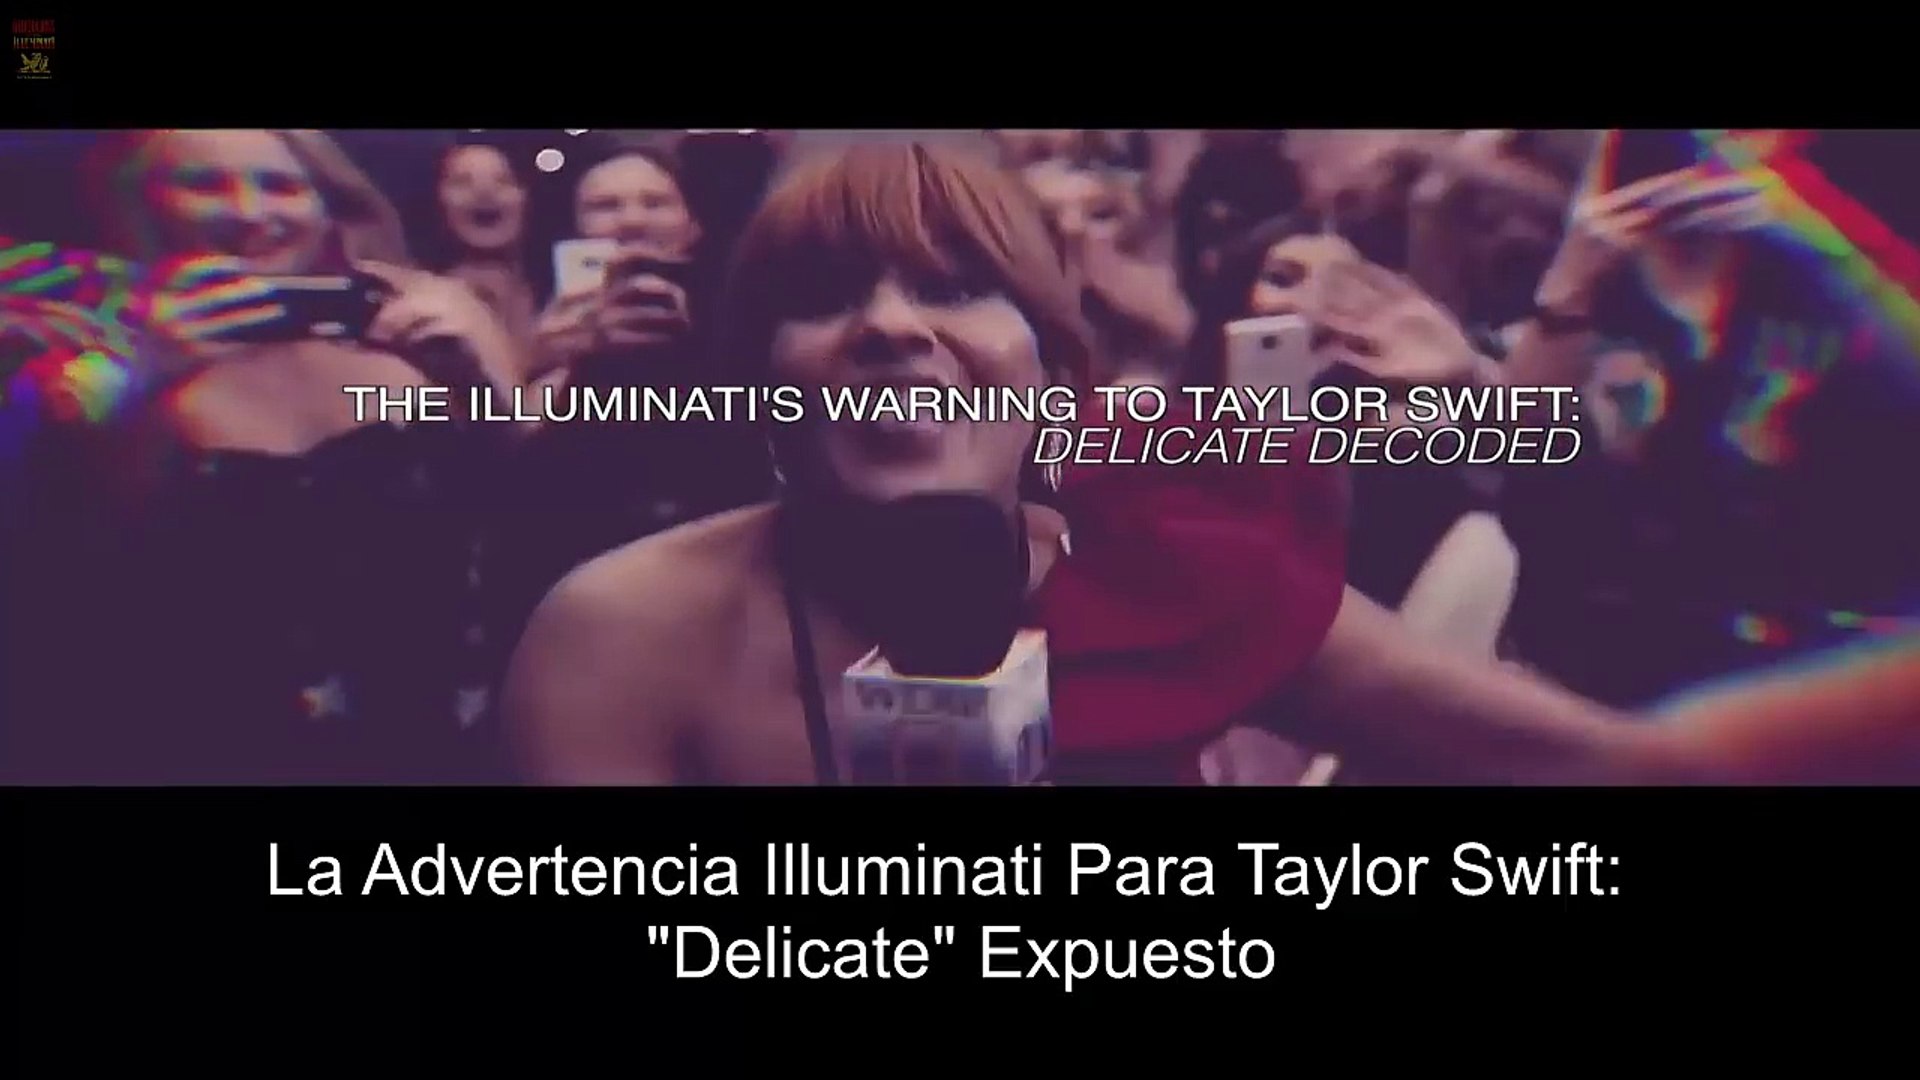 La Advertencia Illuminati Contra Taylor Swift en Nuevo Video